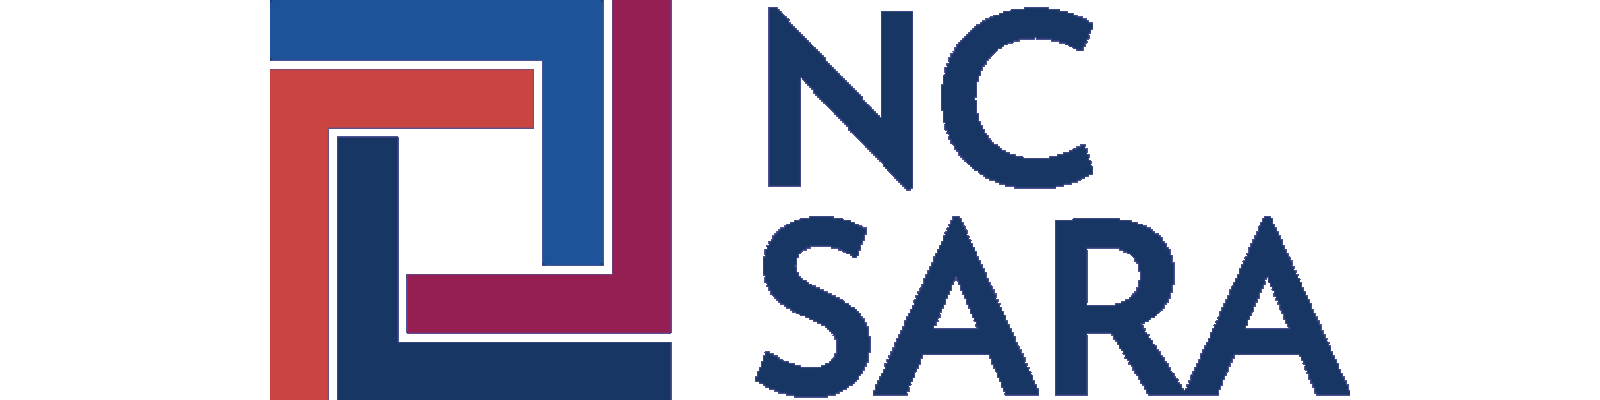 Image of NC-Sara Logo